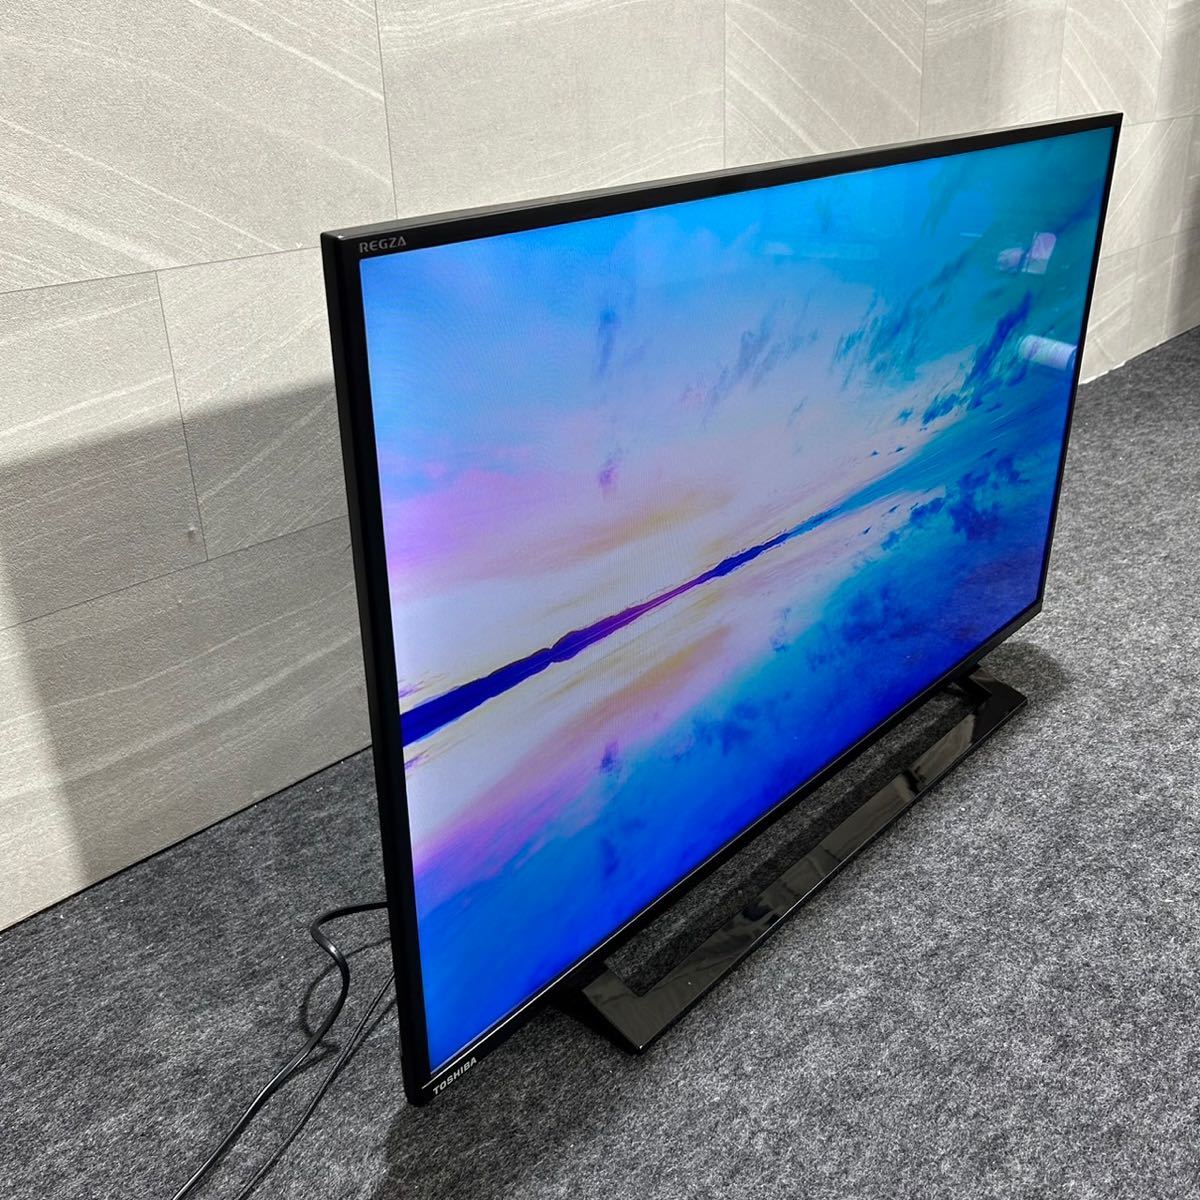 TOSHIBA 液晶テレビ 40S22 REGZA 40インチ 2020年製 外付けハードディスク対応 d1746 東芝 レグザ 40V型 格安 お買い得_画像3